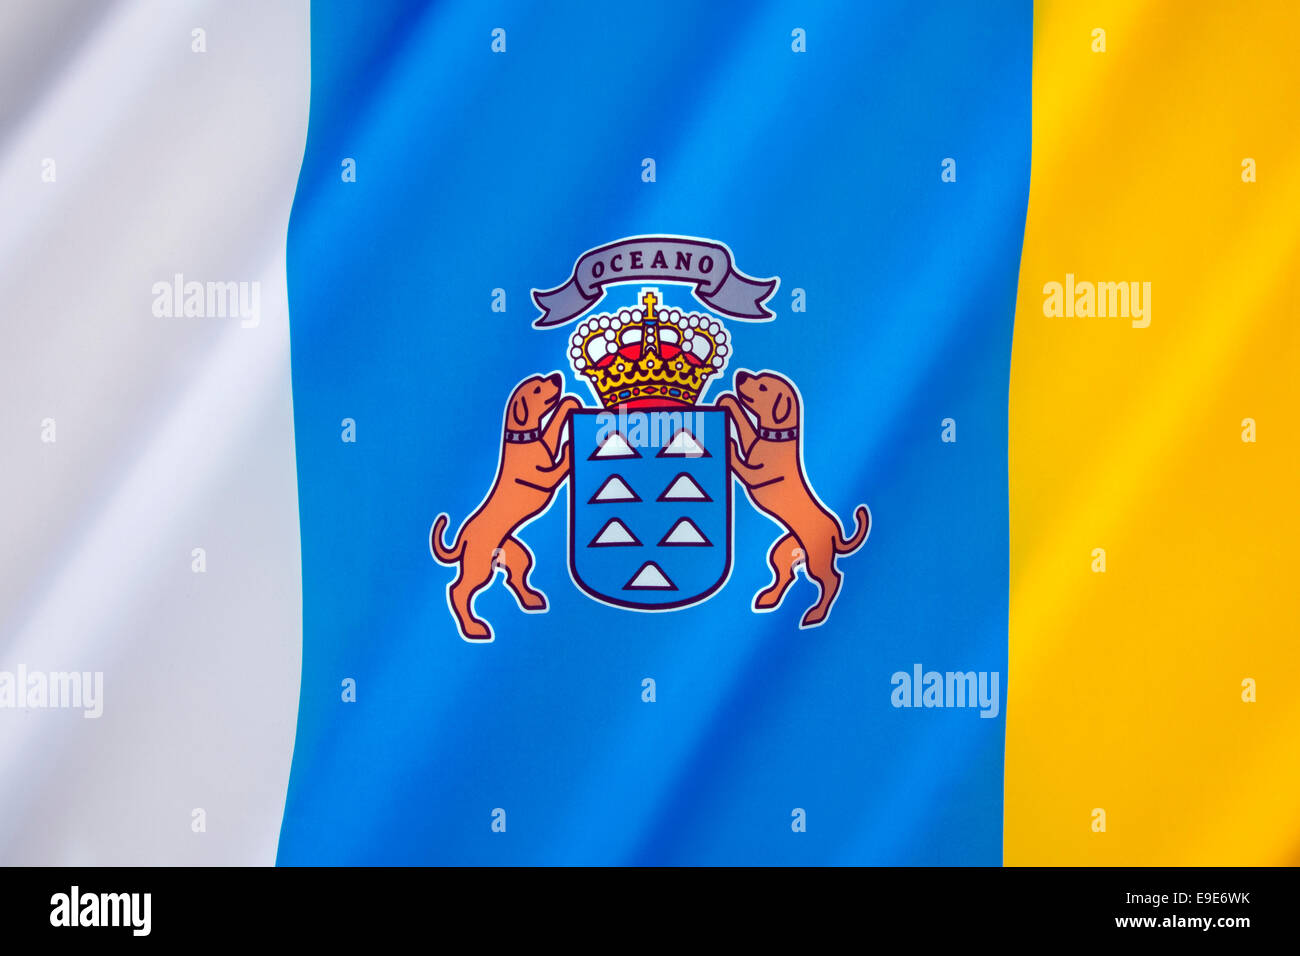 Le drapeau de la Communauté autonome des îles Canaries Banque D'Images